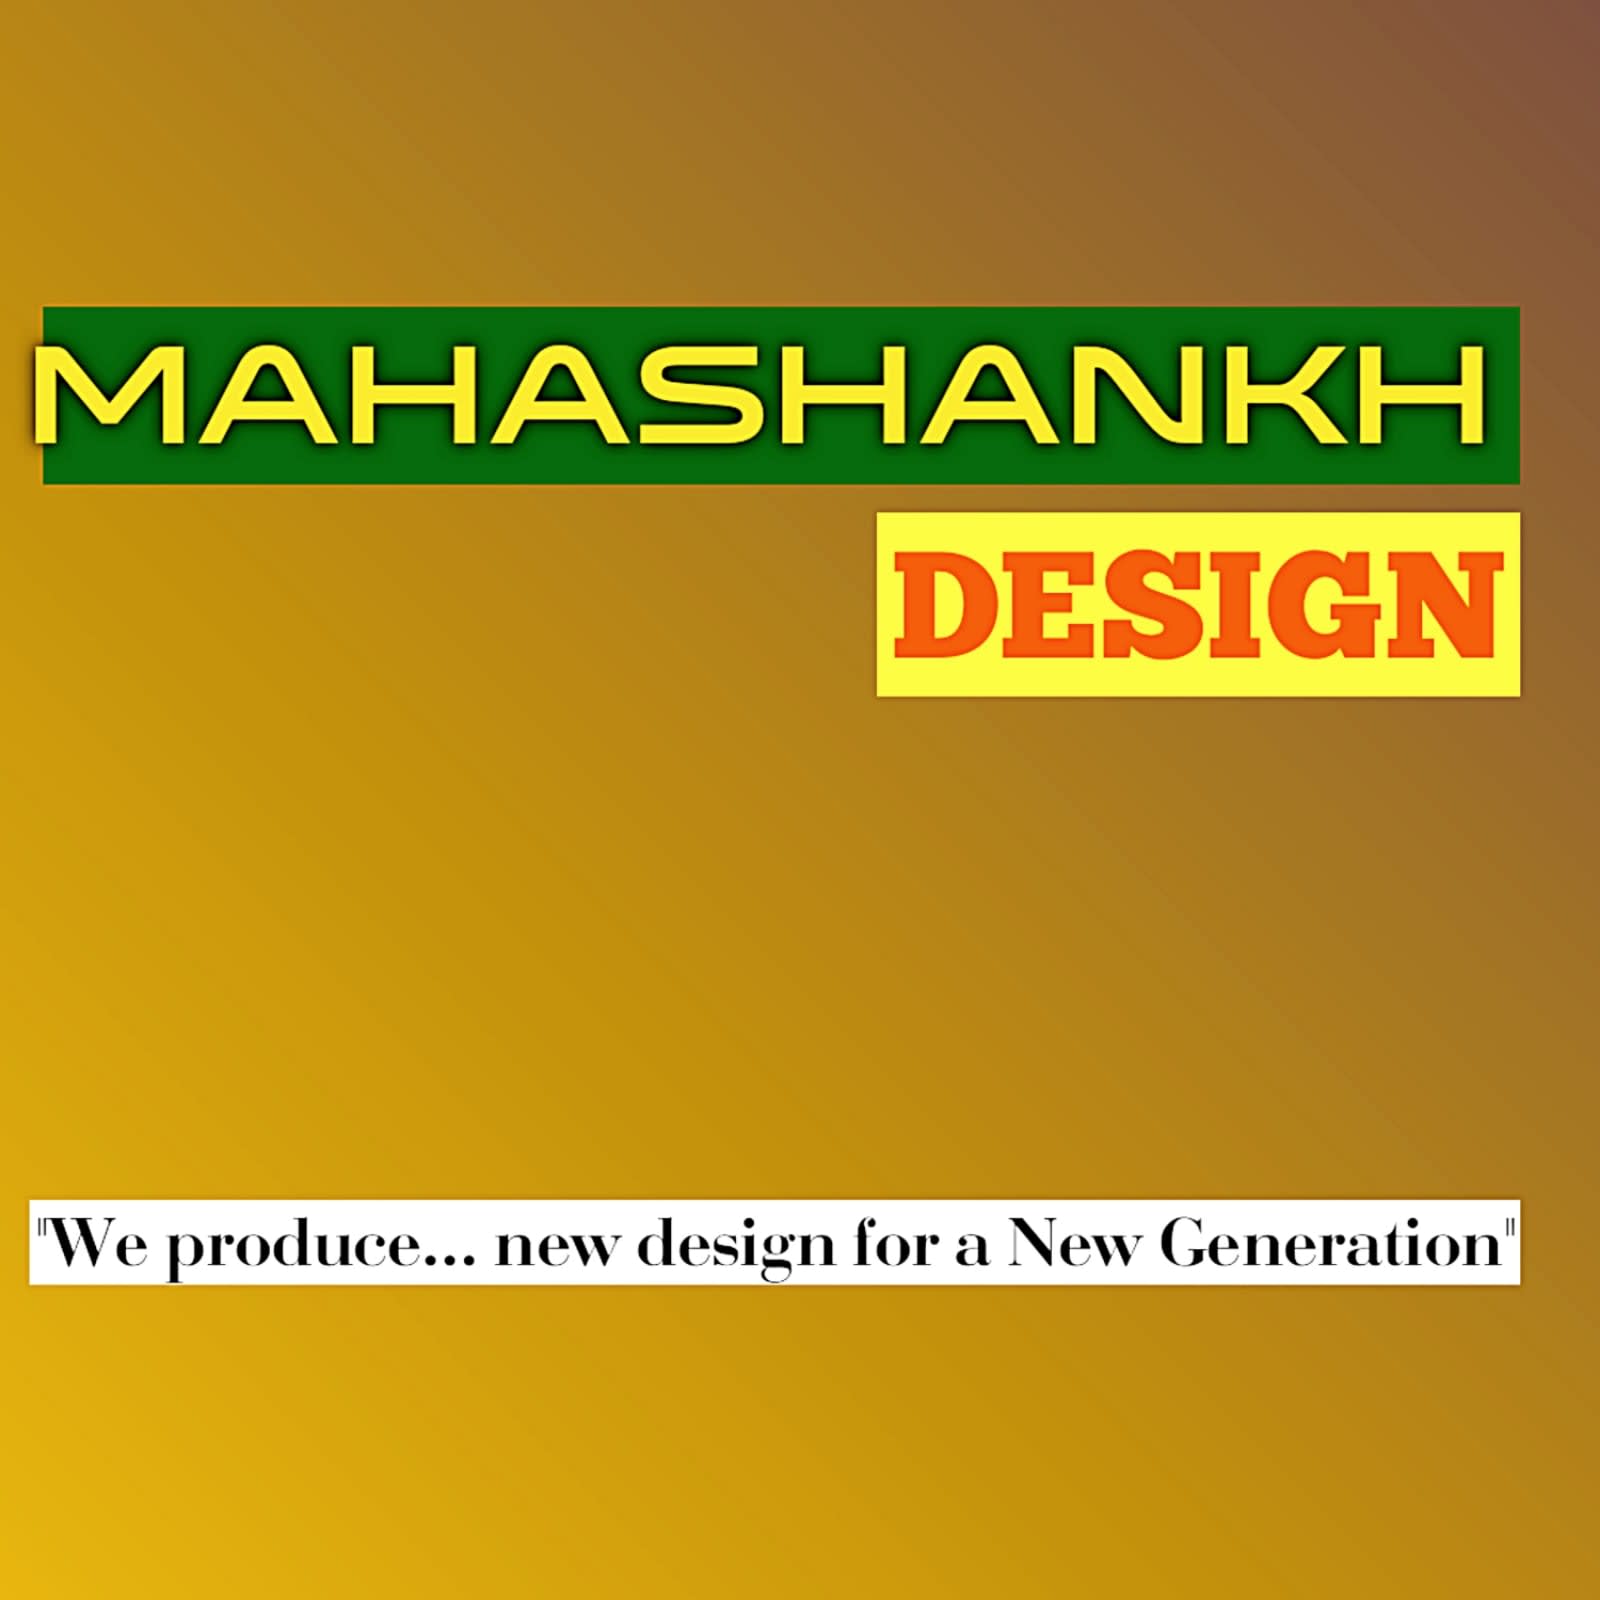 MAHASHANKH DESIGN